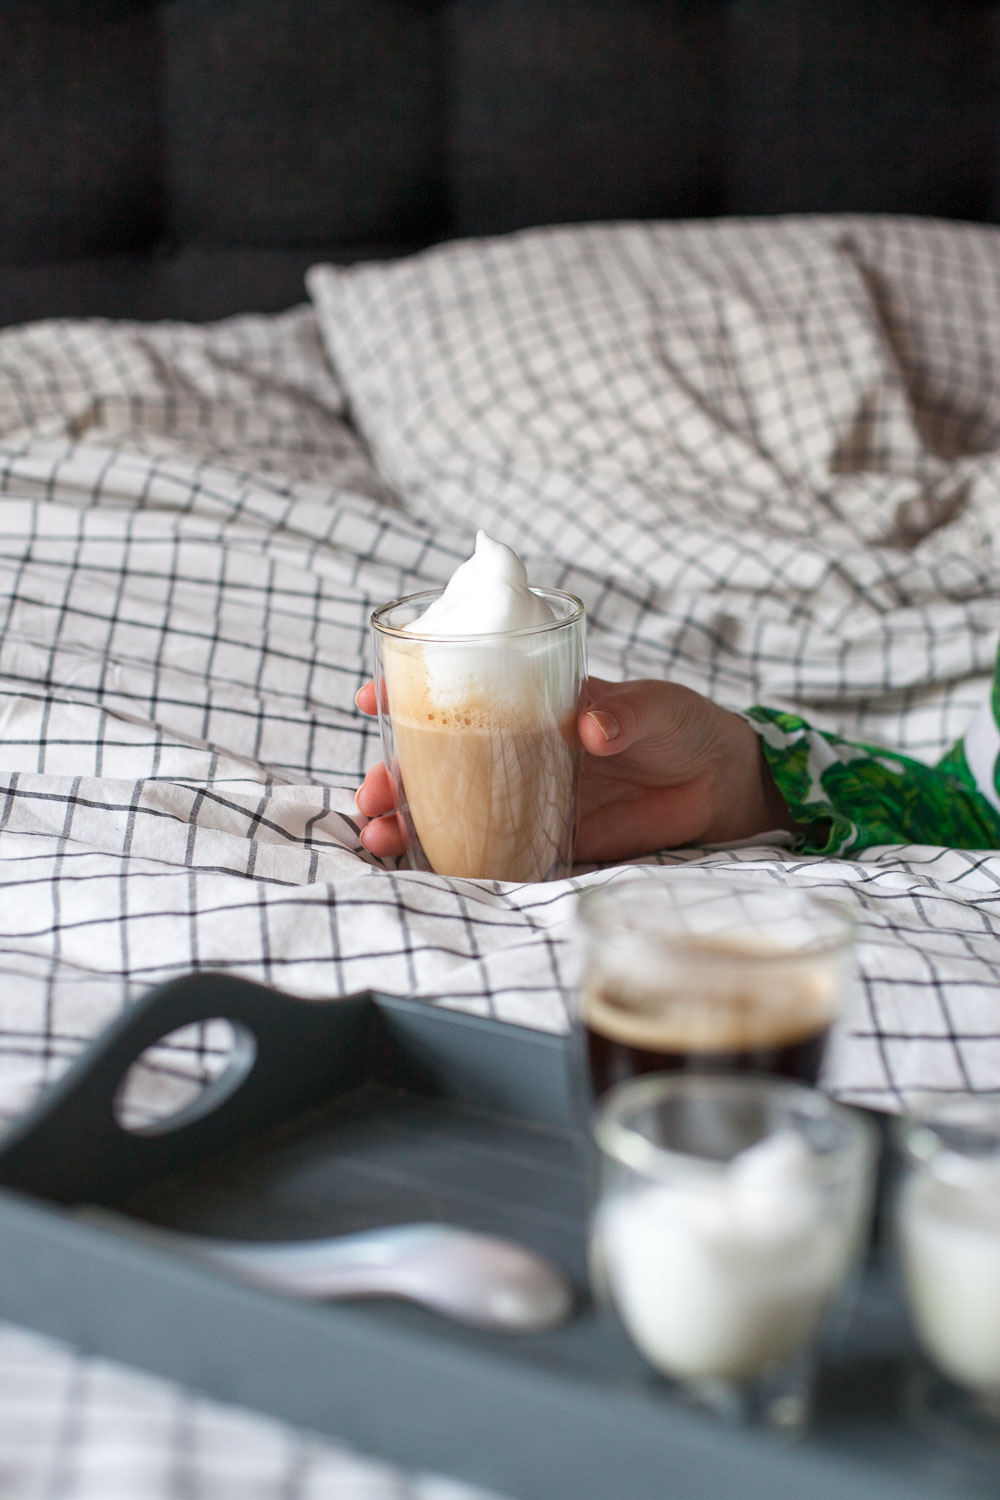 Ein Sonntagmorgen mit Kaffee und pain aux chocolate im Bett.